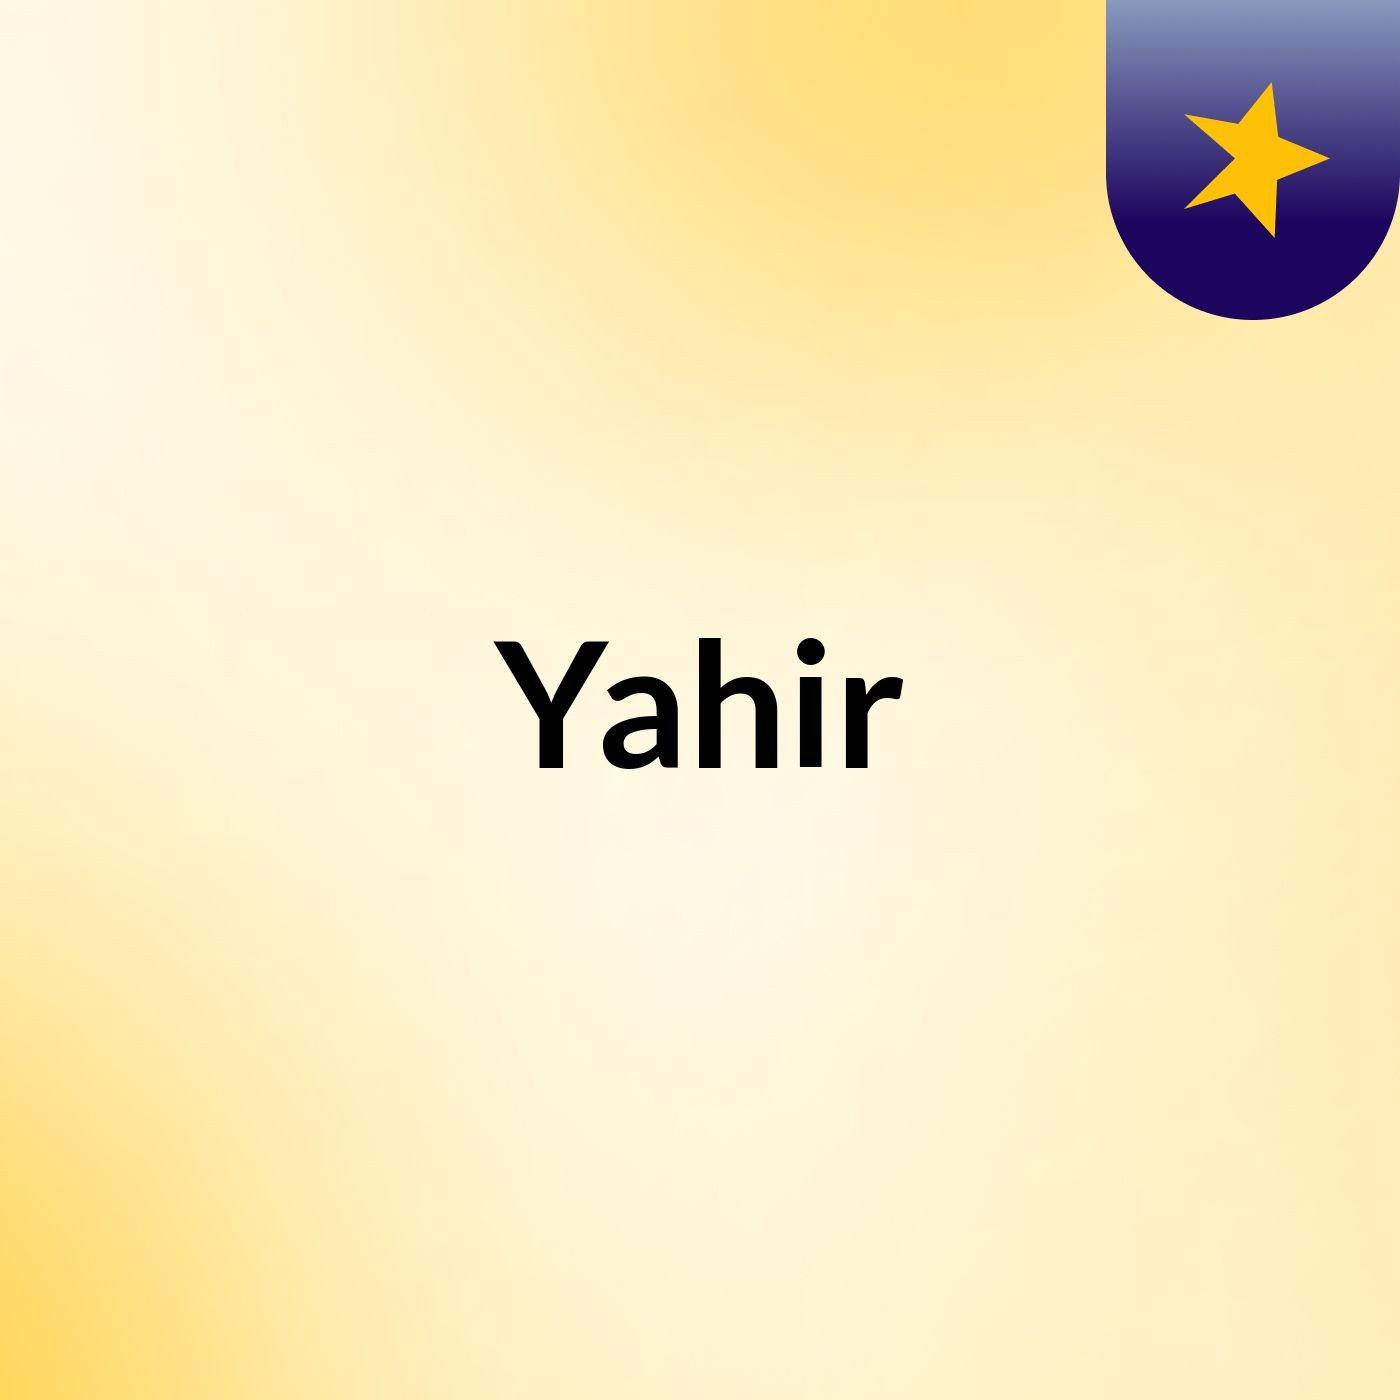 Yahir